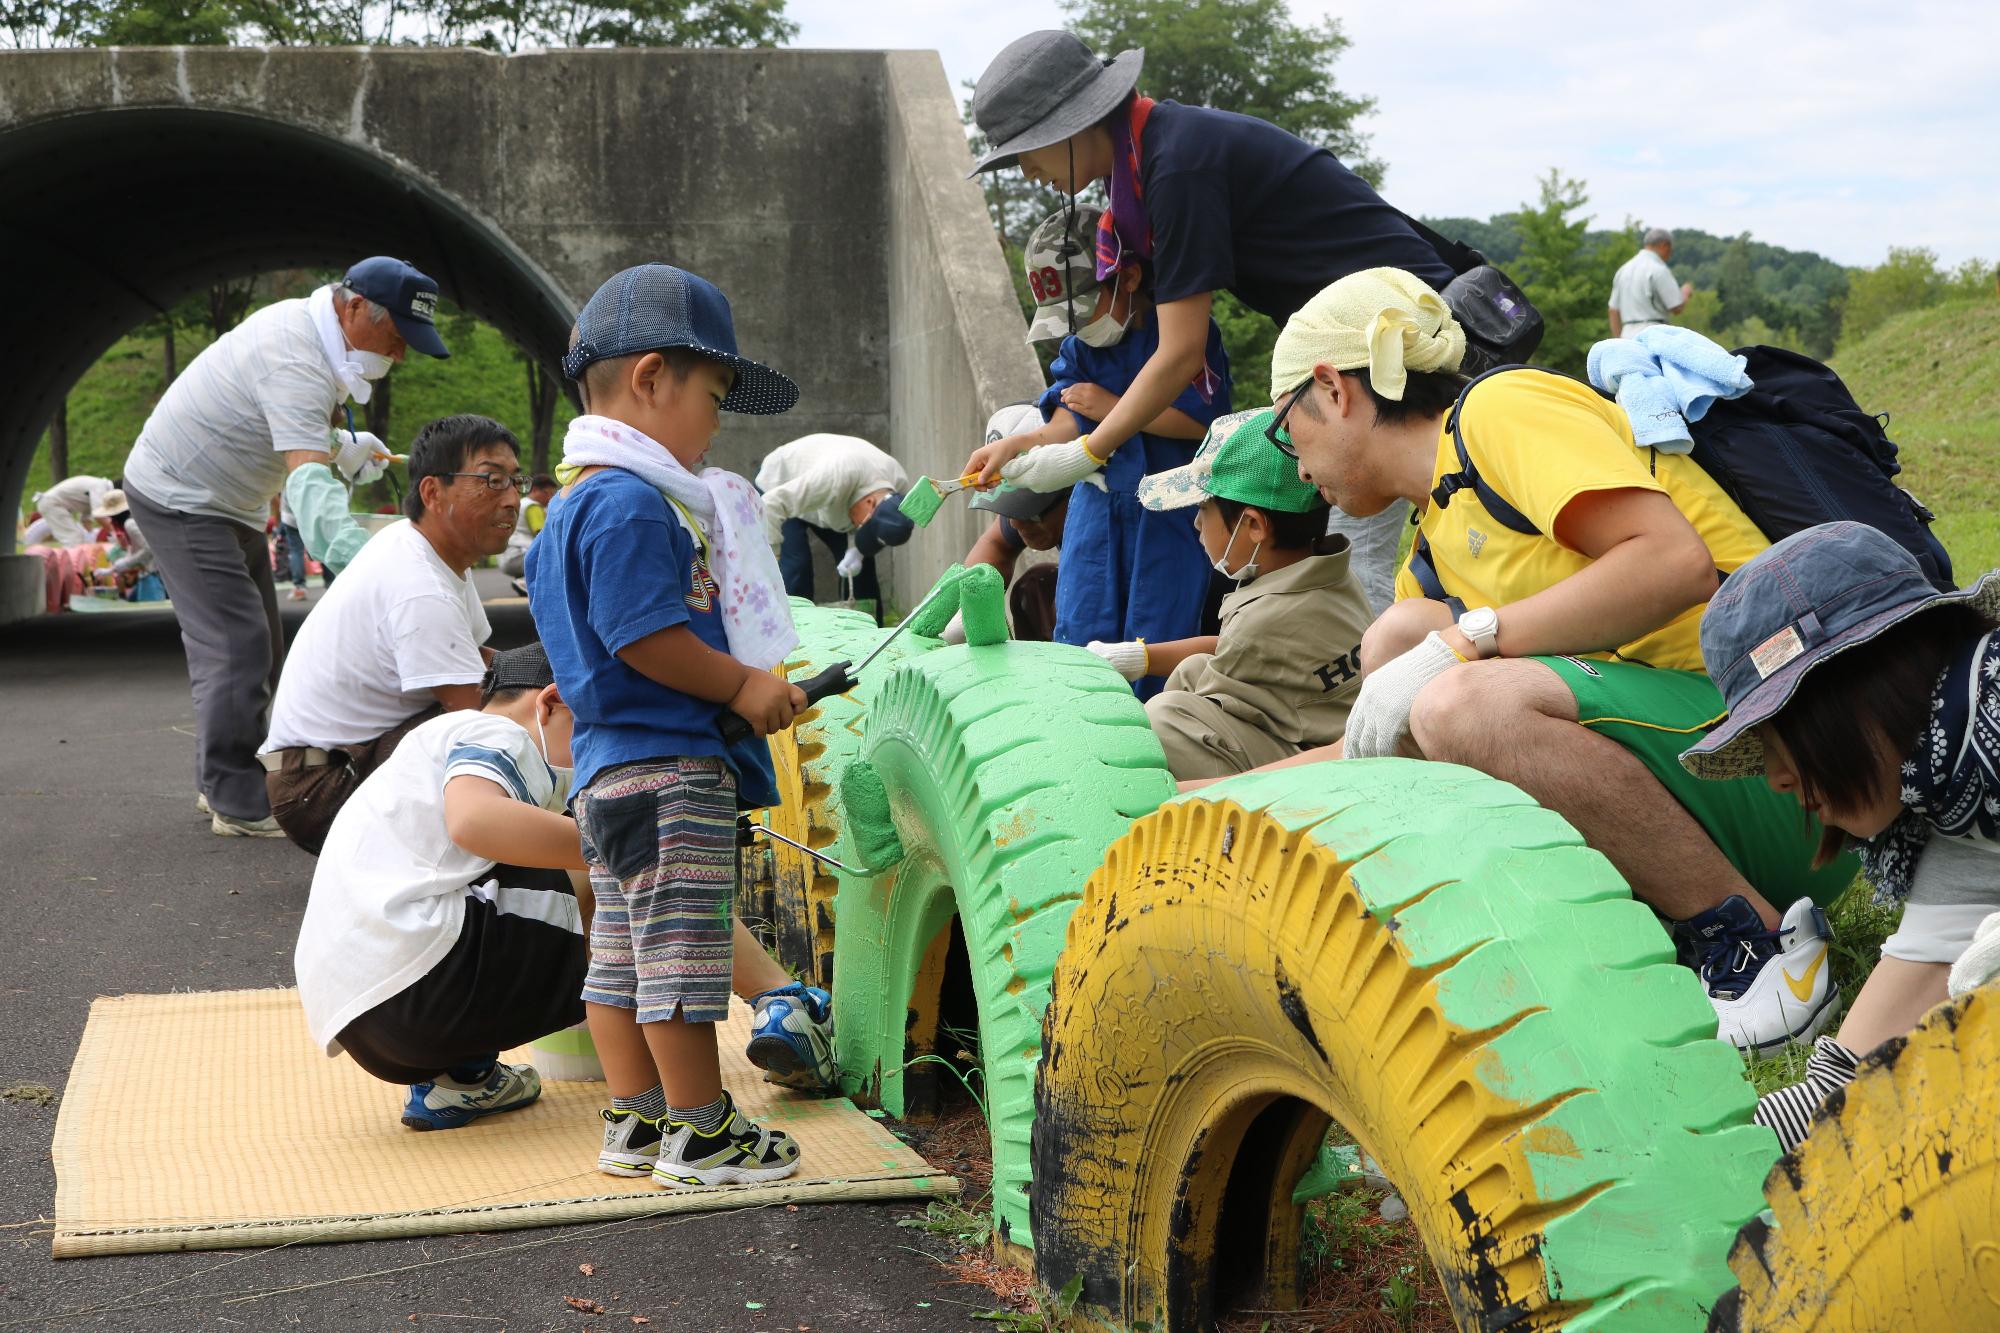 横一列に並んだタイヤの周りに子供や大人が集まり、黄色のタイヤを緑に色塗りをしている写真